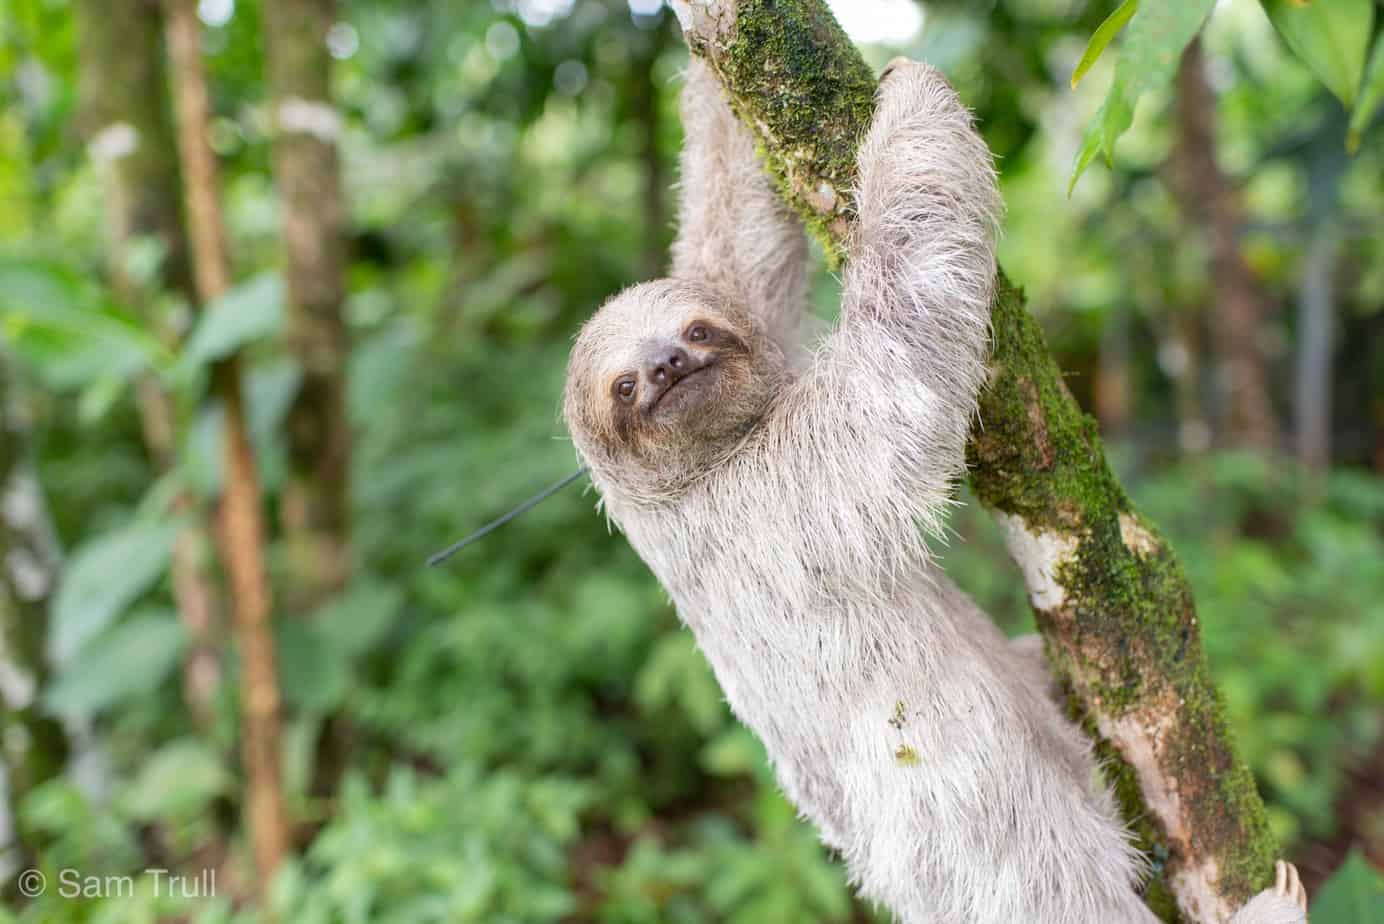 Saving Sloths Together